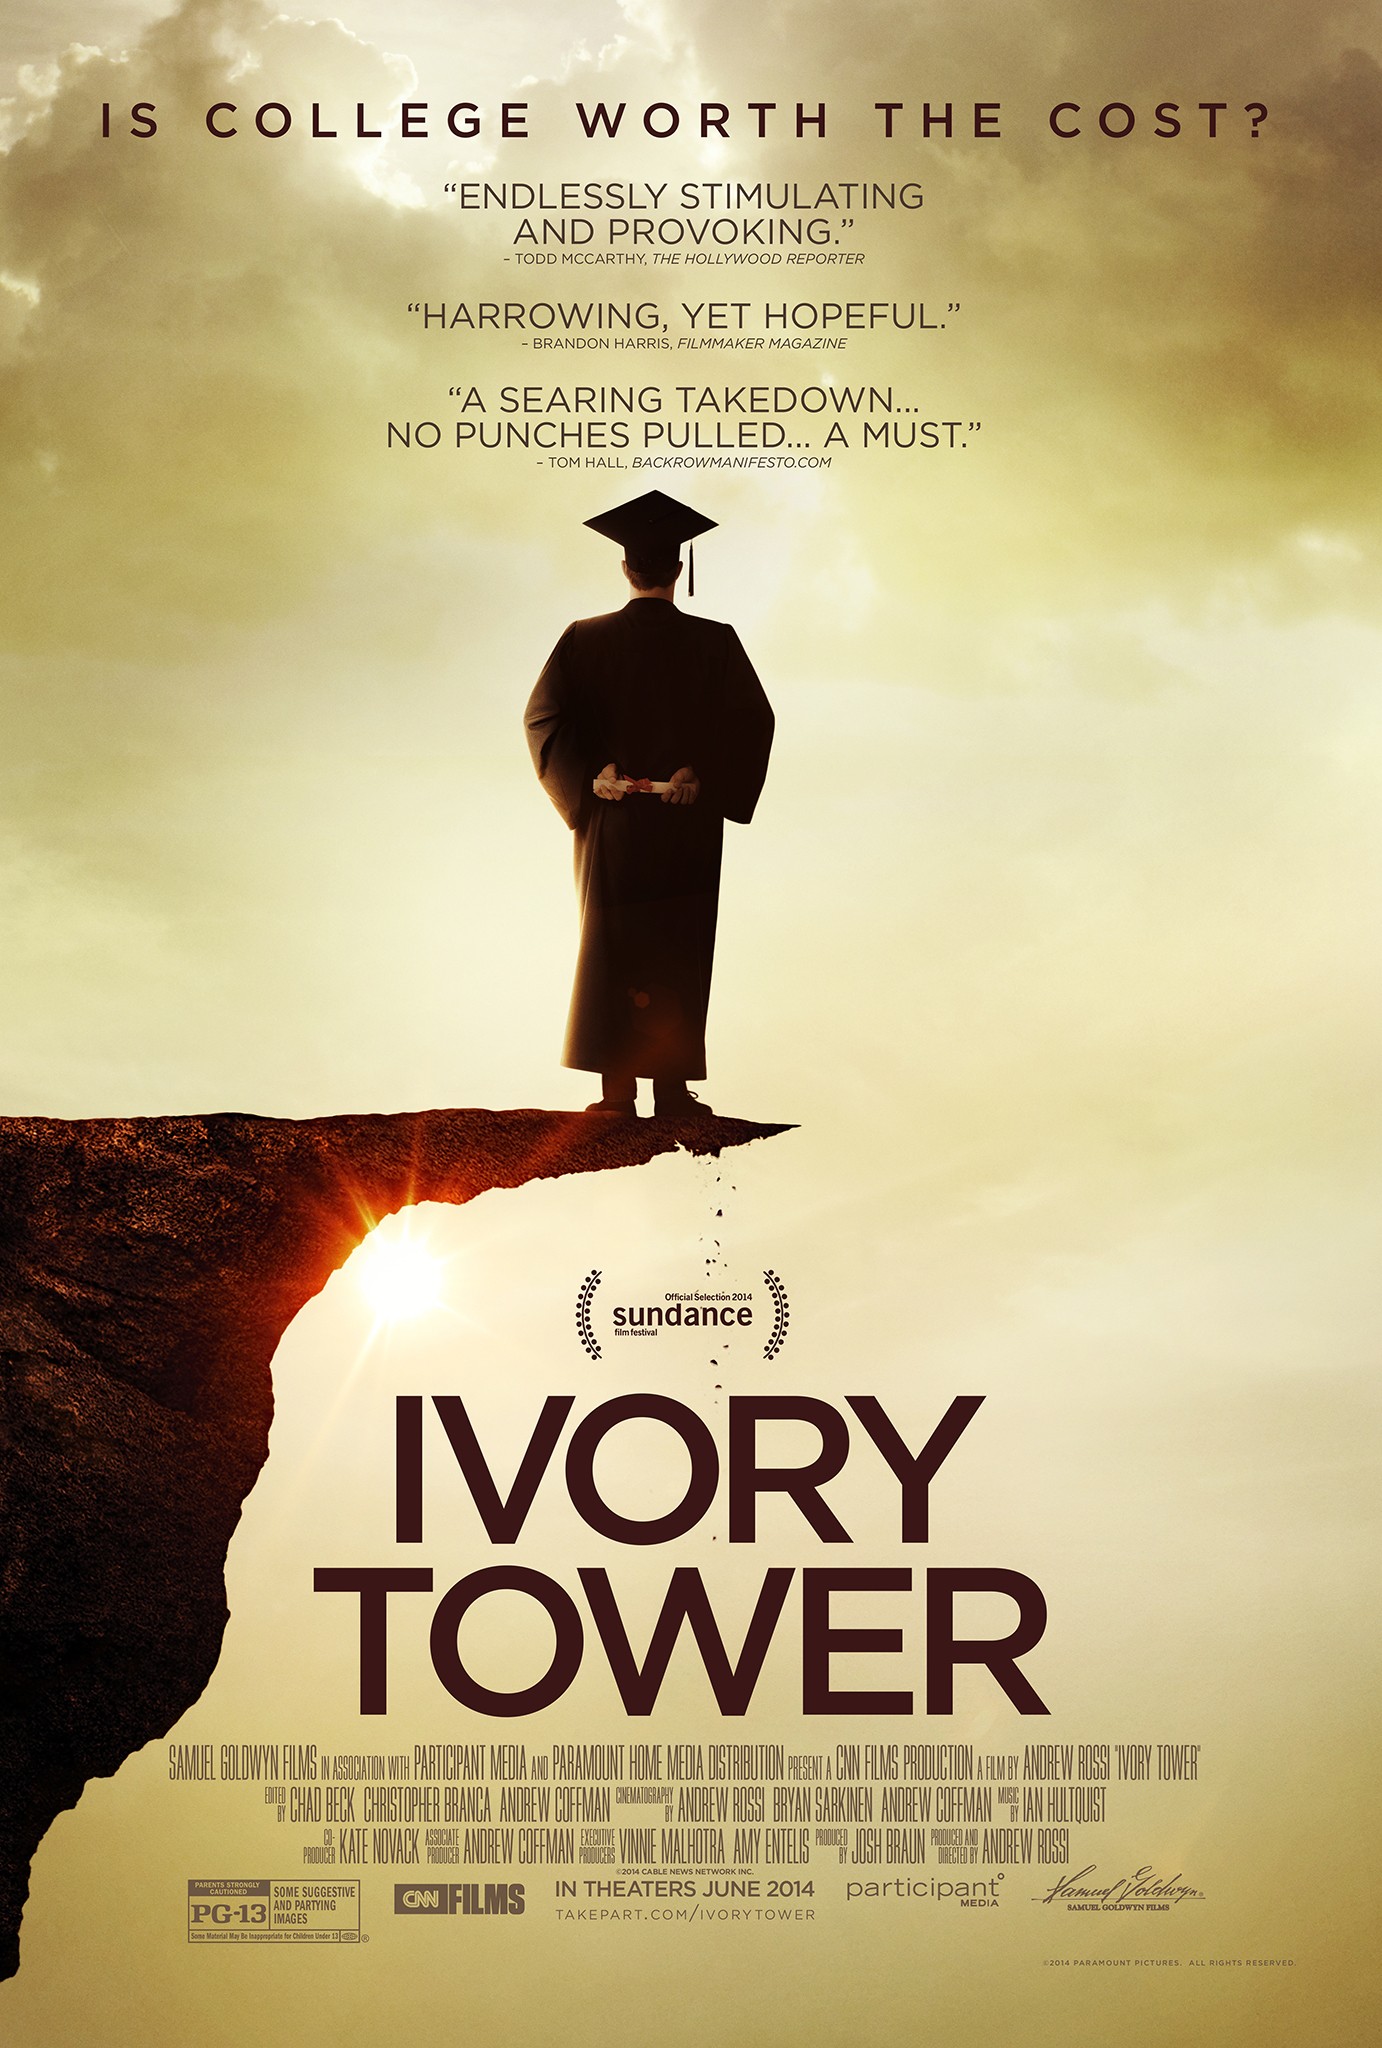 Ivory Tower (#2 of 2): Mega Sized Movie Poster Image - IMP Awards